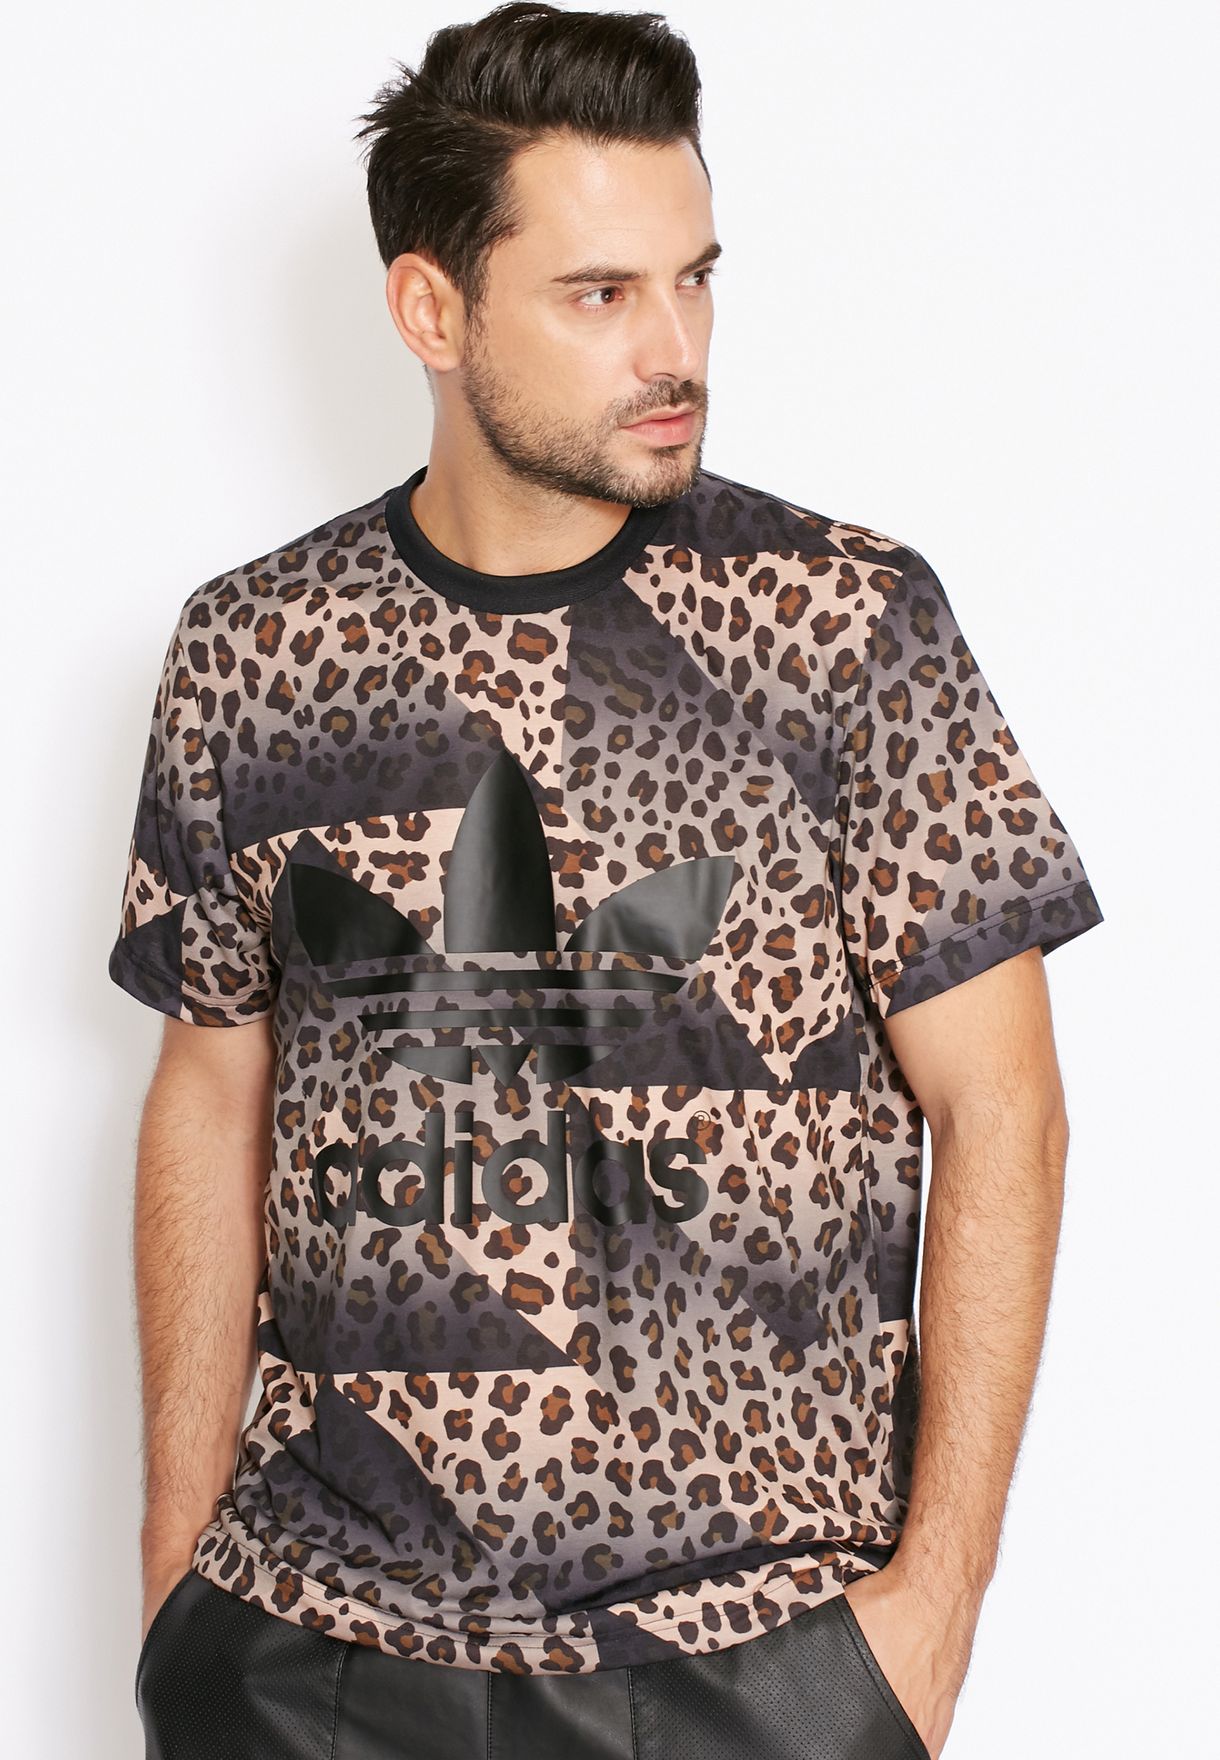 adidas cheetah shirt